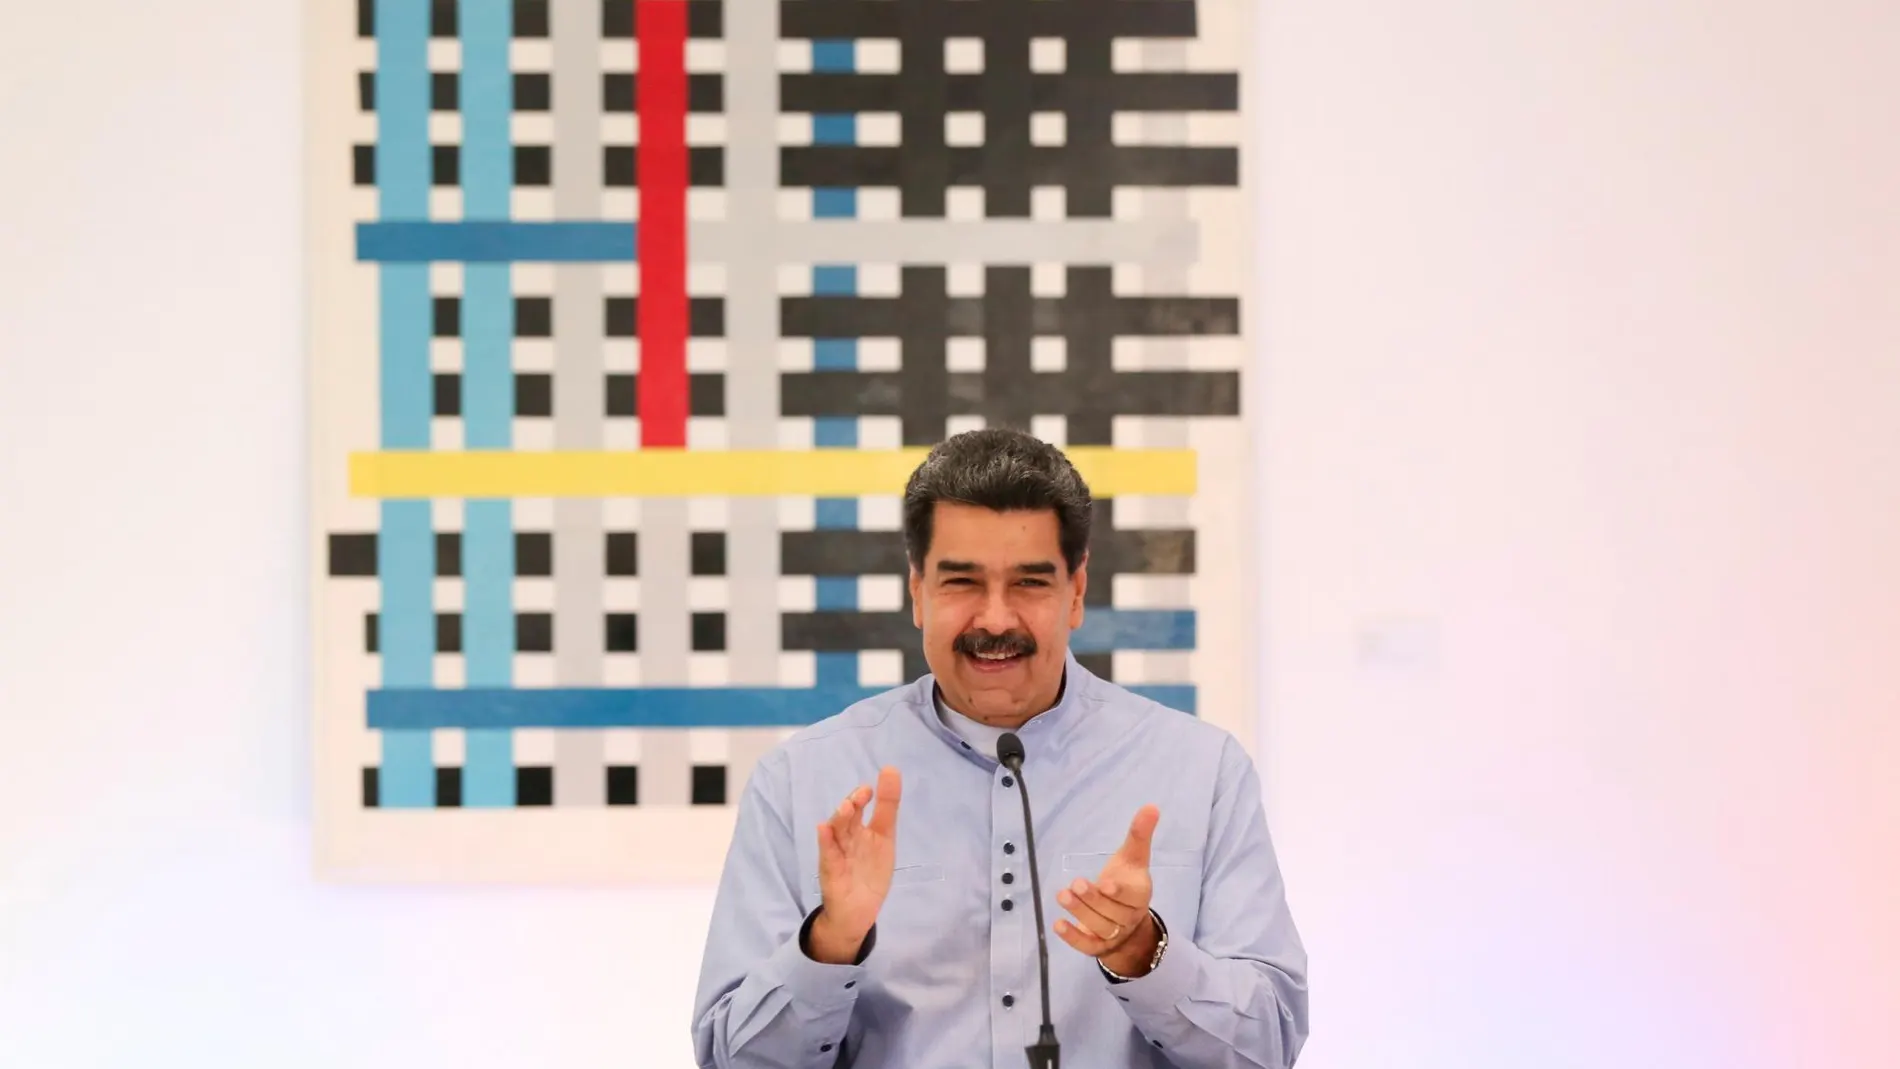 El presidente de Venezuela Nicolás Maduro/Efe